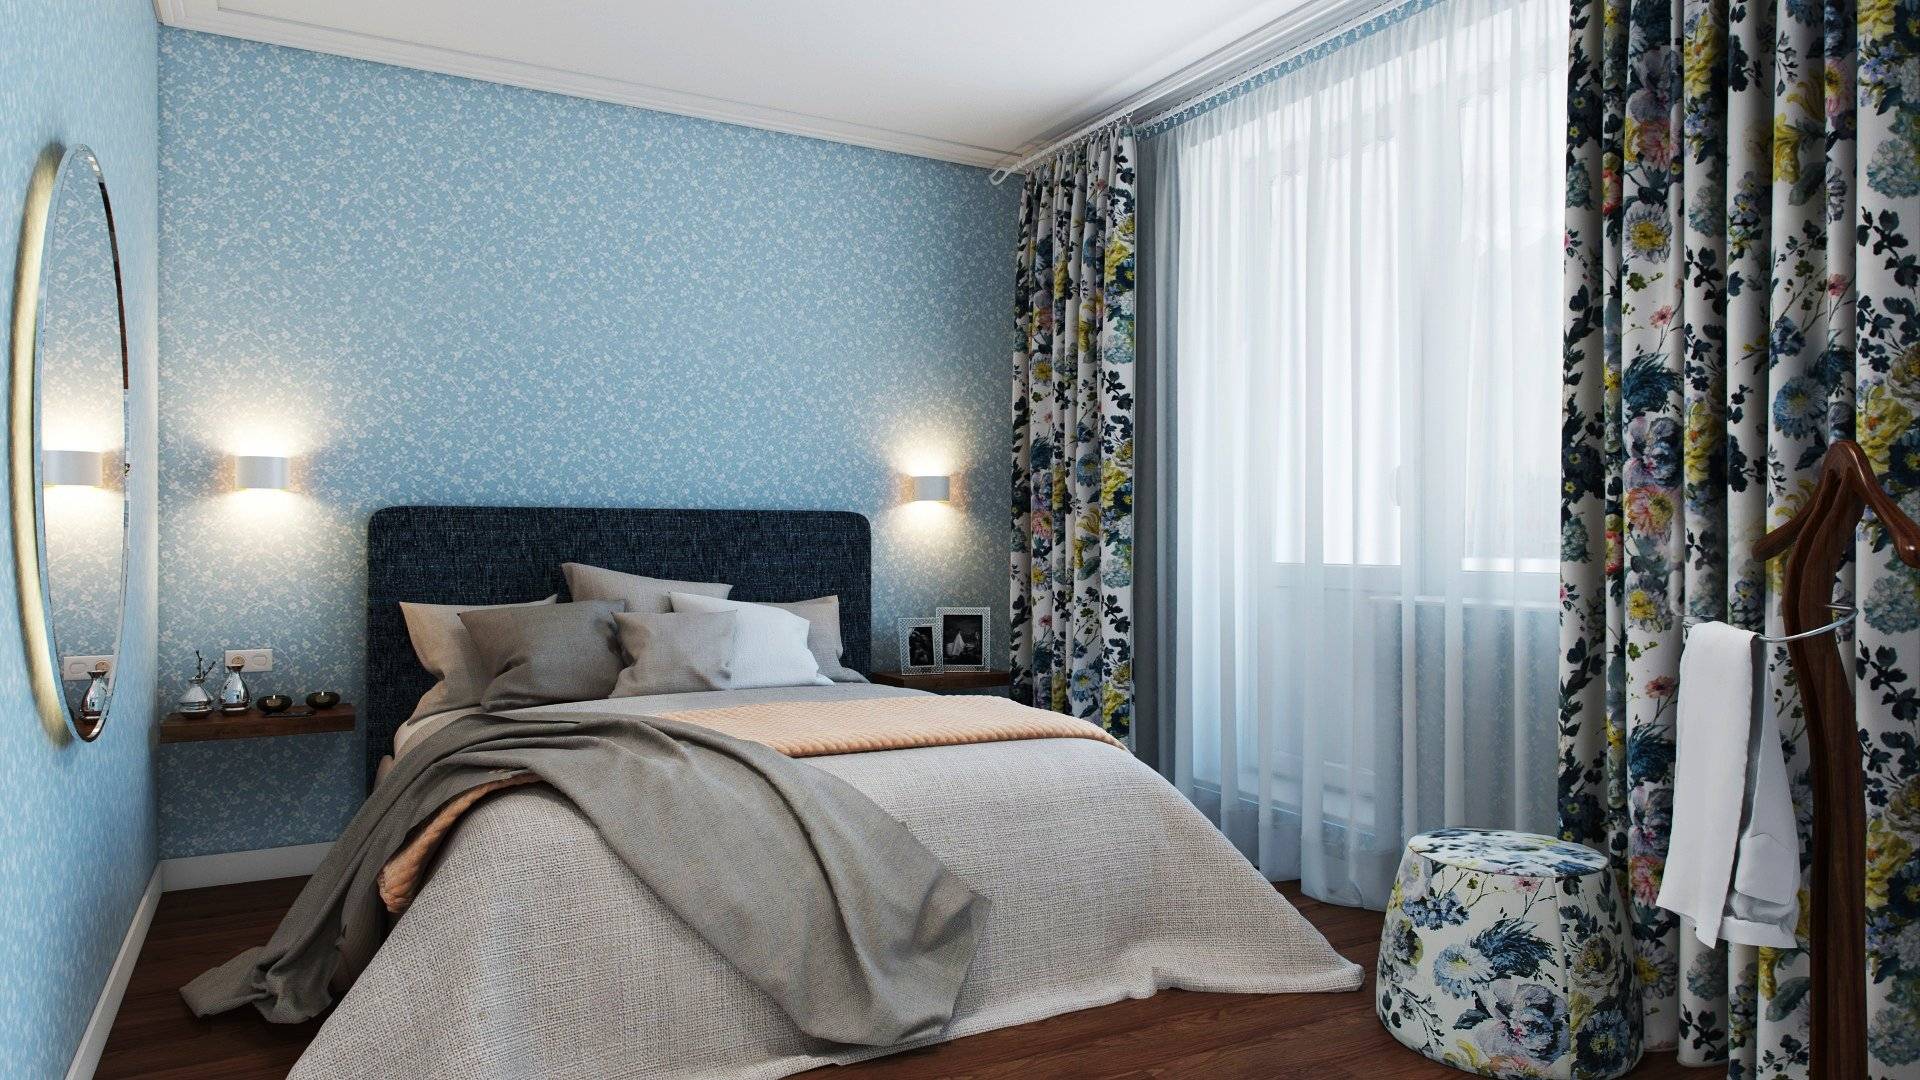 Правила выбора обоев для маленькой спальни: 50+ современных фото в интерьере